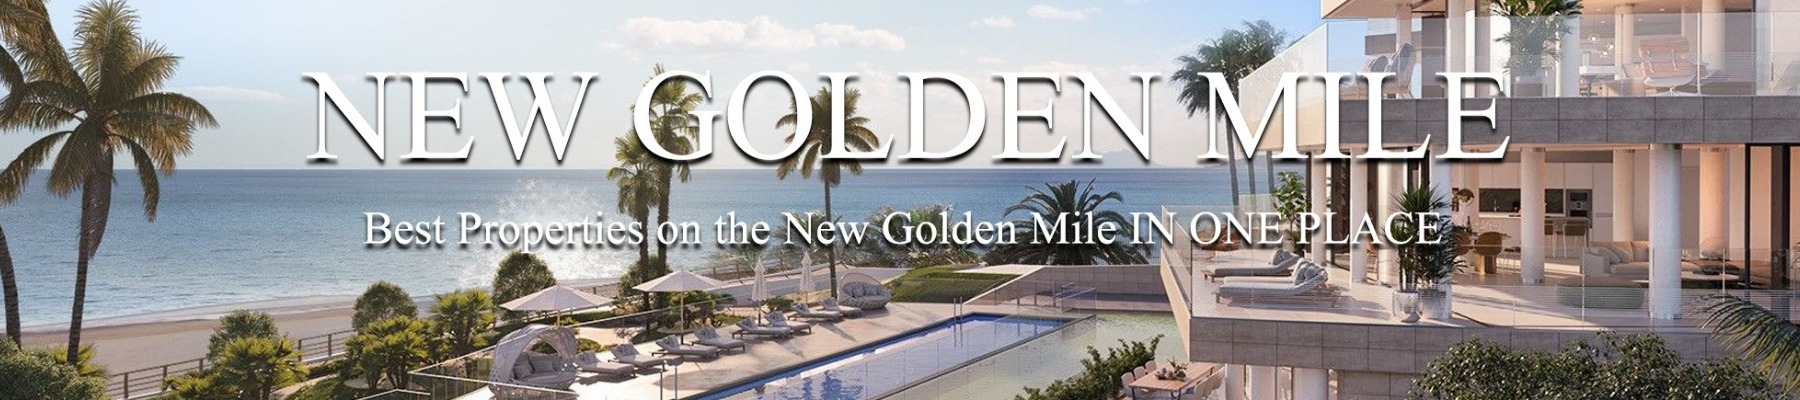 New Golden Mile